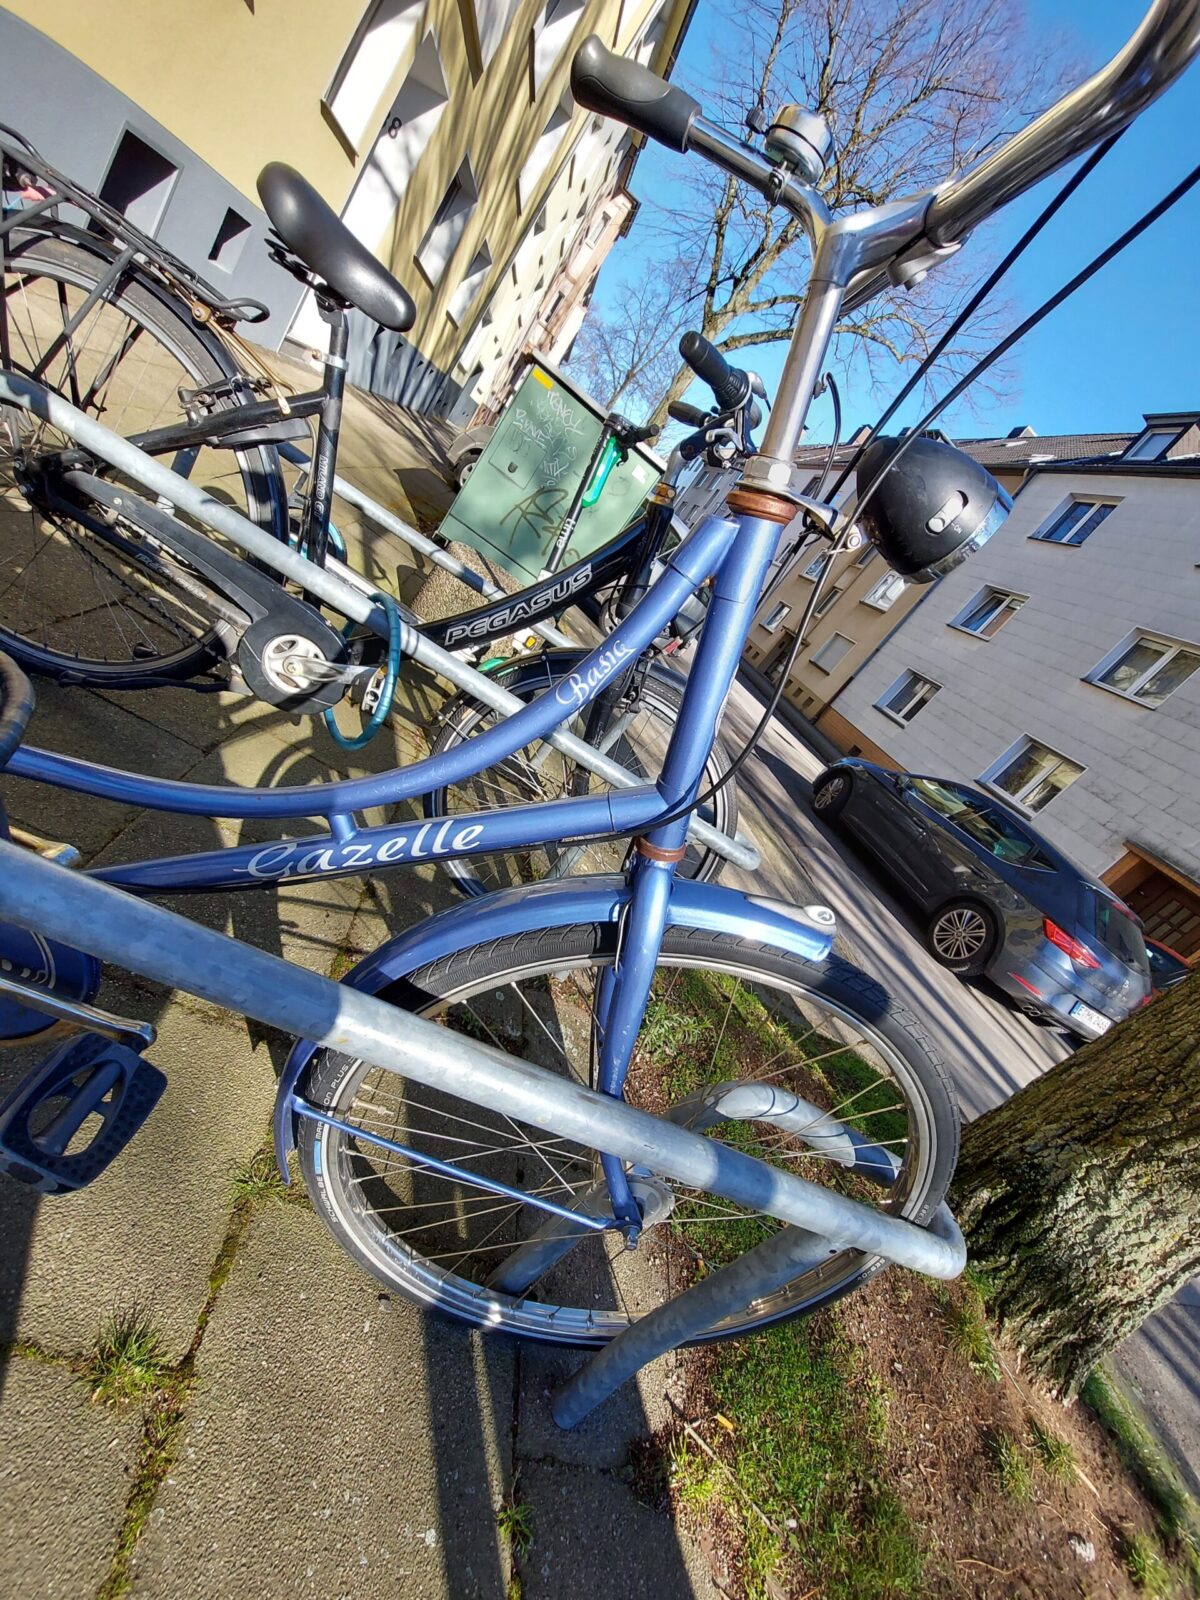 Beispiel-Foto zum Thema #cityzoo.
ZU sehen sind zwei Fahrräder deren Rahmen einen Schriftzug tragen. Auf einem hellblauen Fahrrad mit tiefem Einstieg und geschwungenen Lenker steht Gazelle. Auf einem dunkelgrauen Fahrrad im Hintergrund Pegasus.